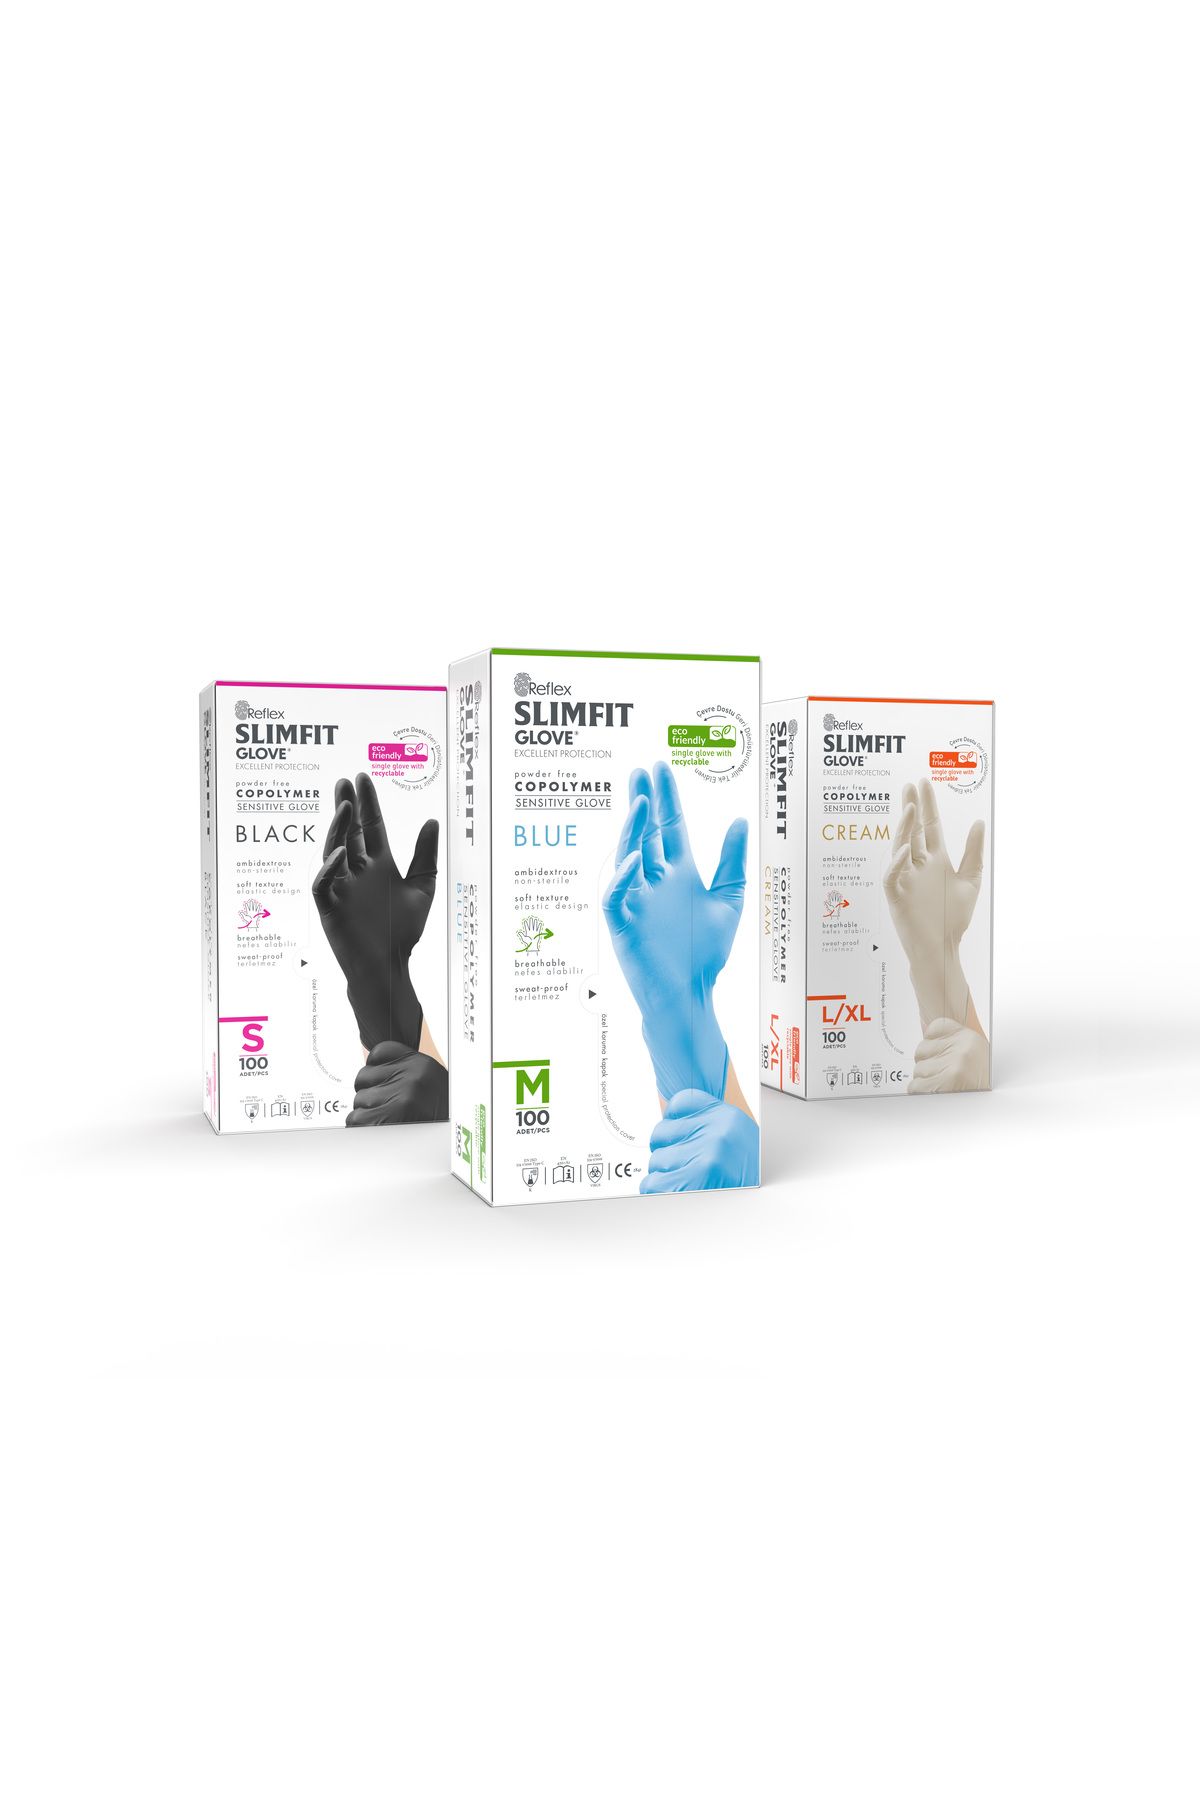 Reflex Slımfıt Glove Pudrasız Tek Kullanımlık Gıdaya Uygun Siyah S Beden Eldiven 100'lü Paket